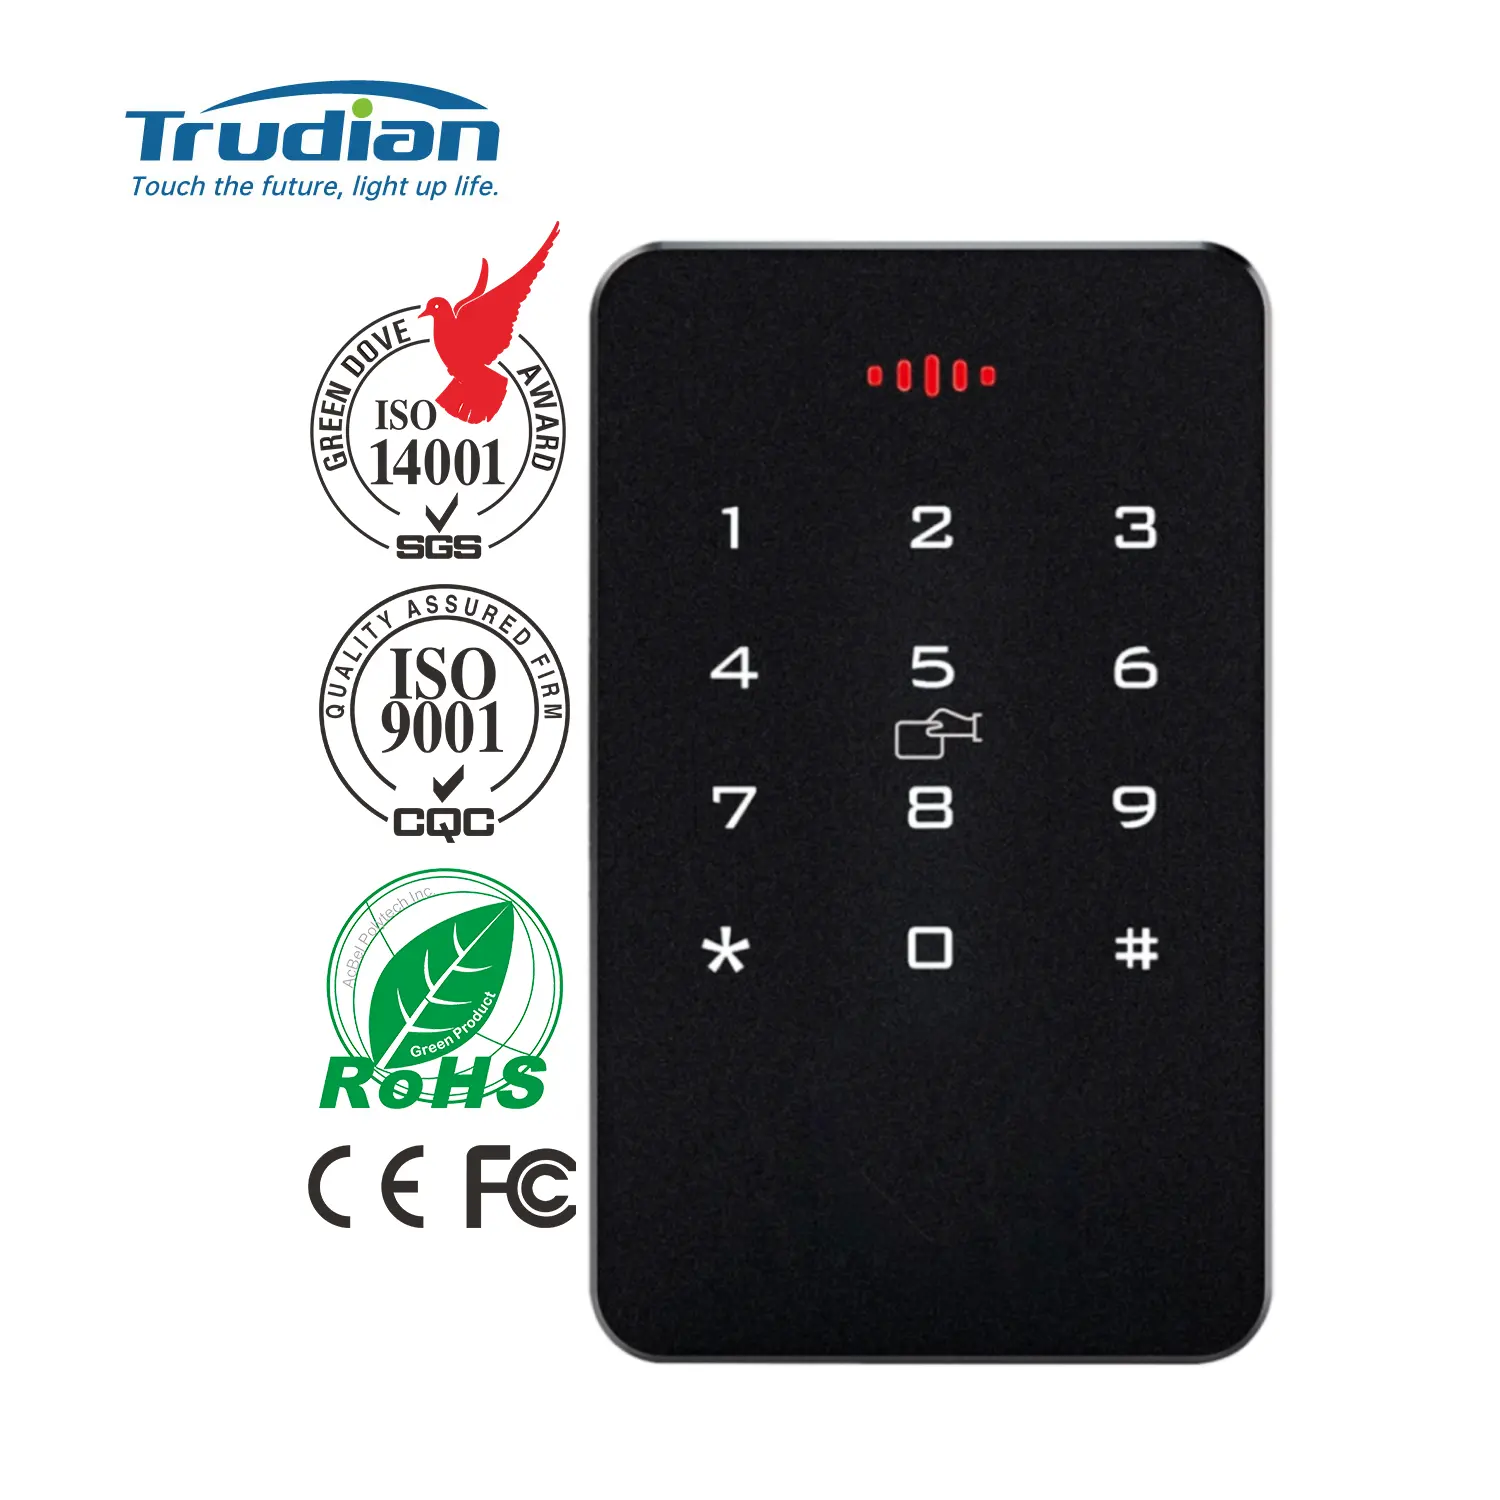 قارئ بطاقات NFC القارئ الحيوي القابل للتثبيت على الحائط Trudian ويمكن التحكم فيه من دون مفاتيح مع إمكانية إدخال كلمة السر